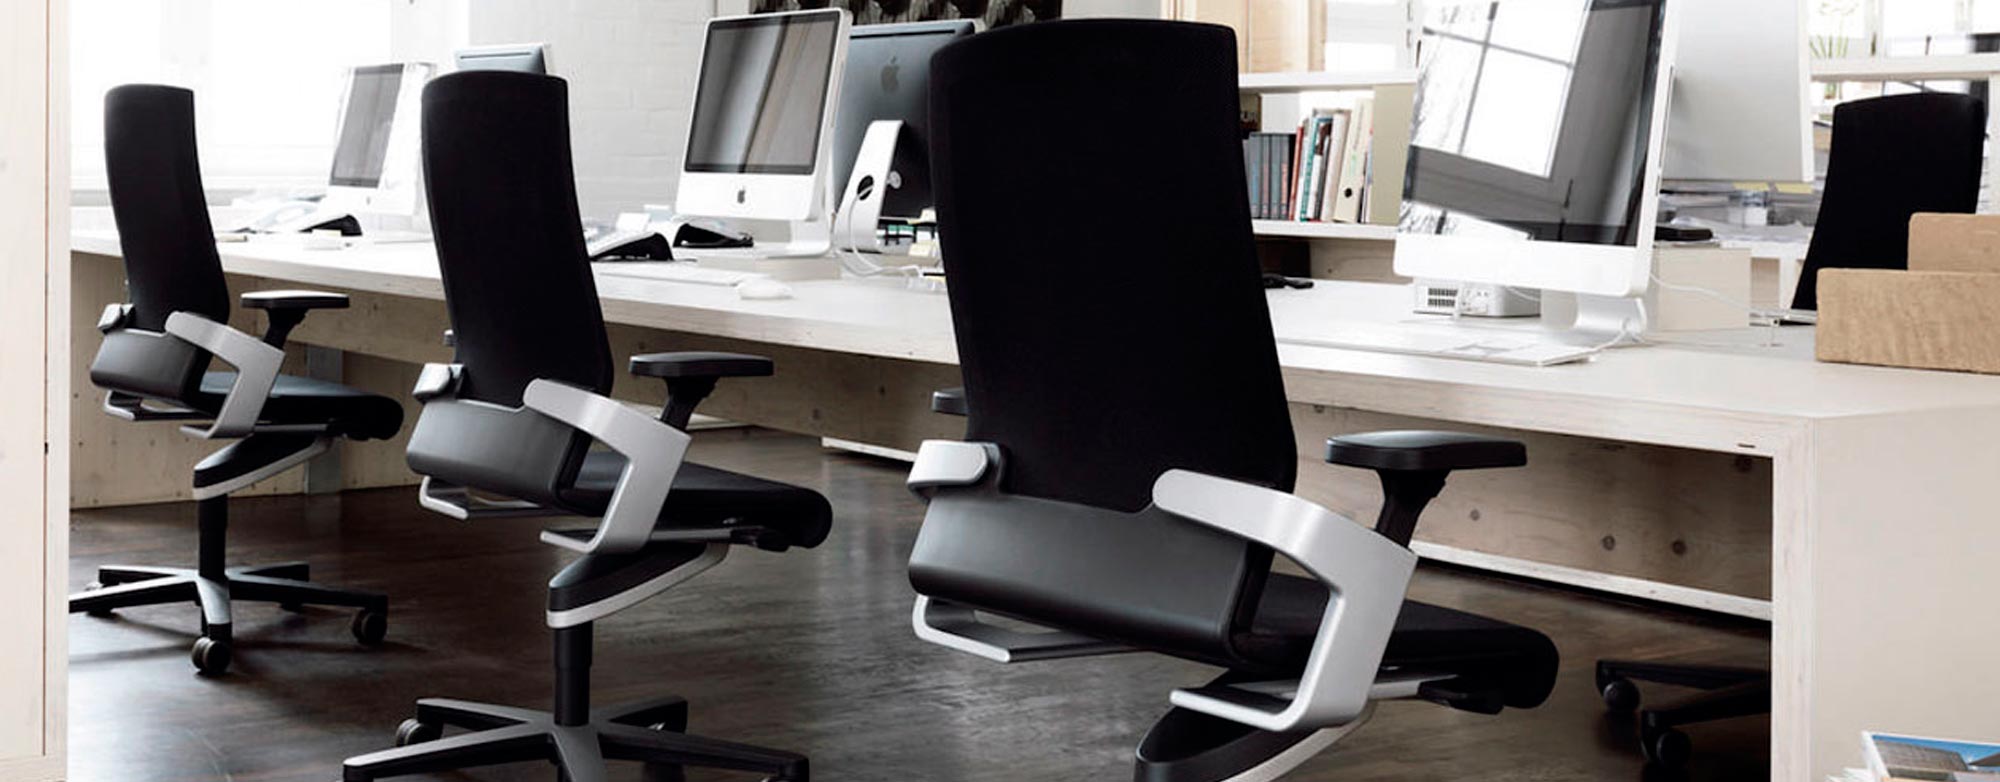 las sillas de oficina deben ser ergonómicas